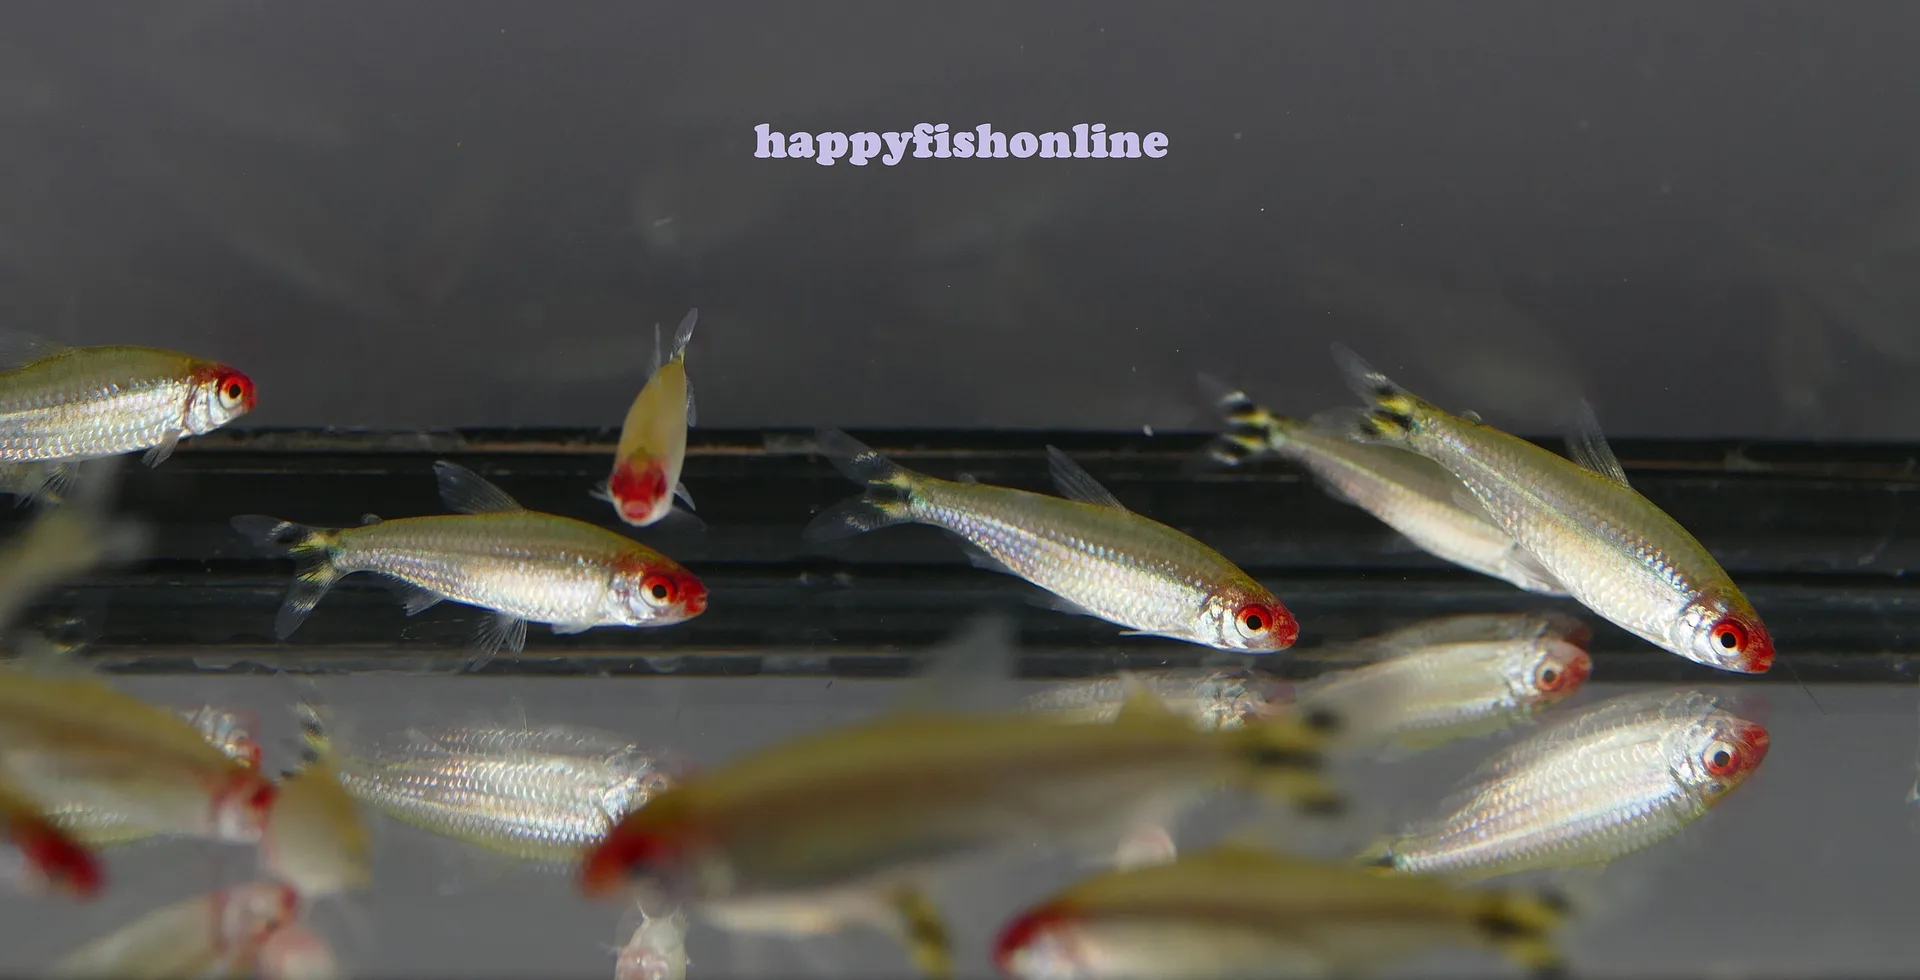 happyfishonline's Gallery